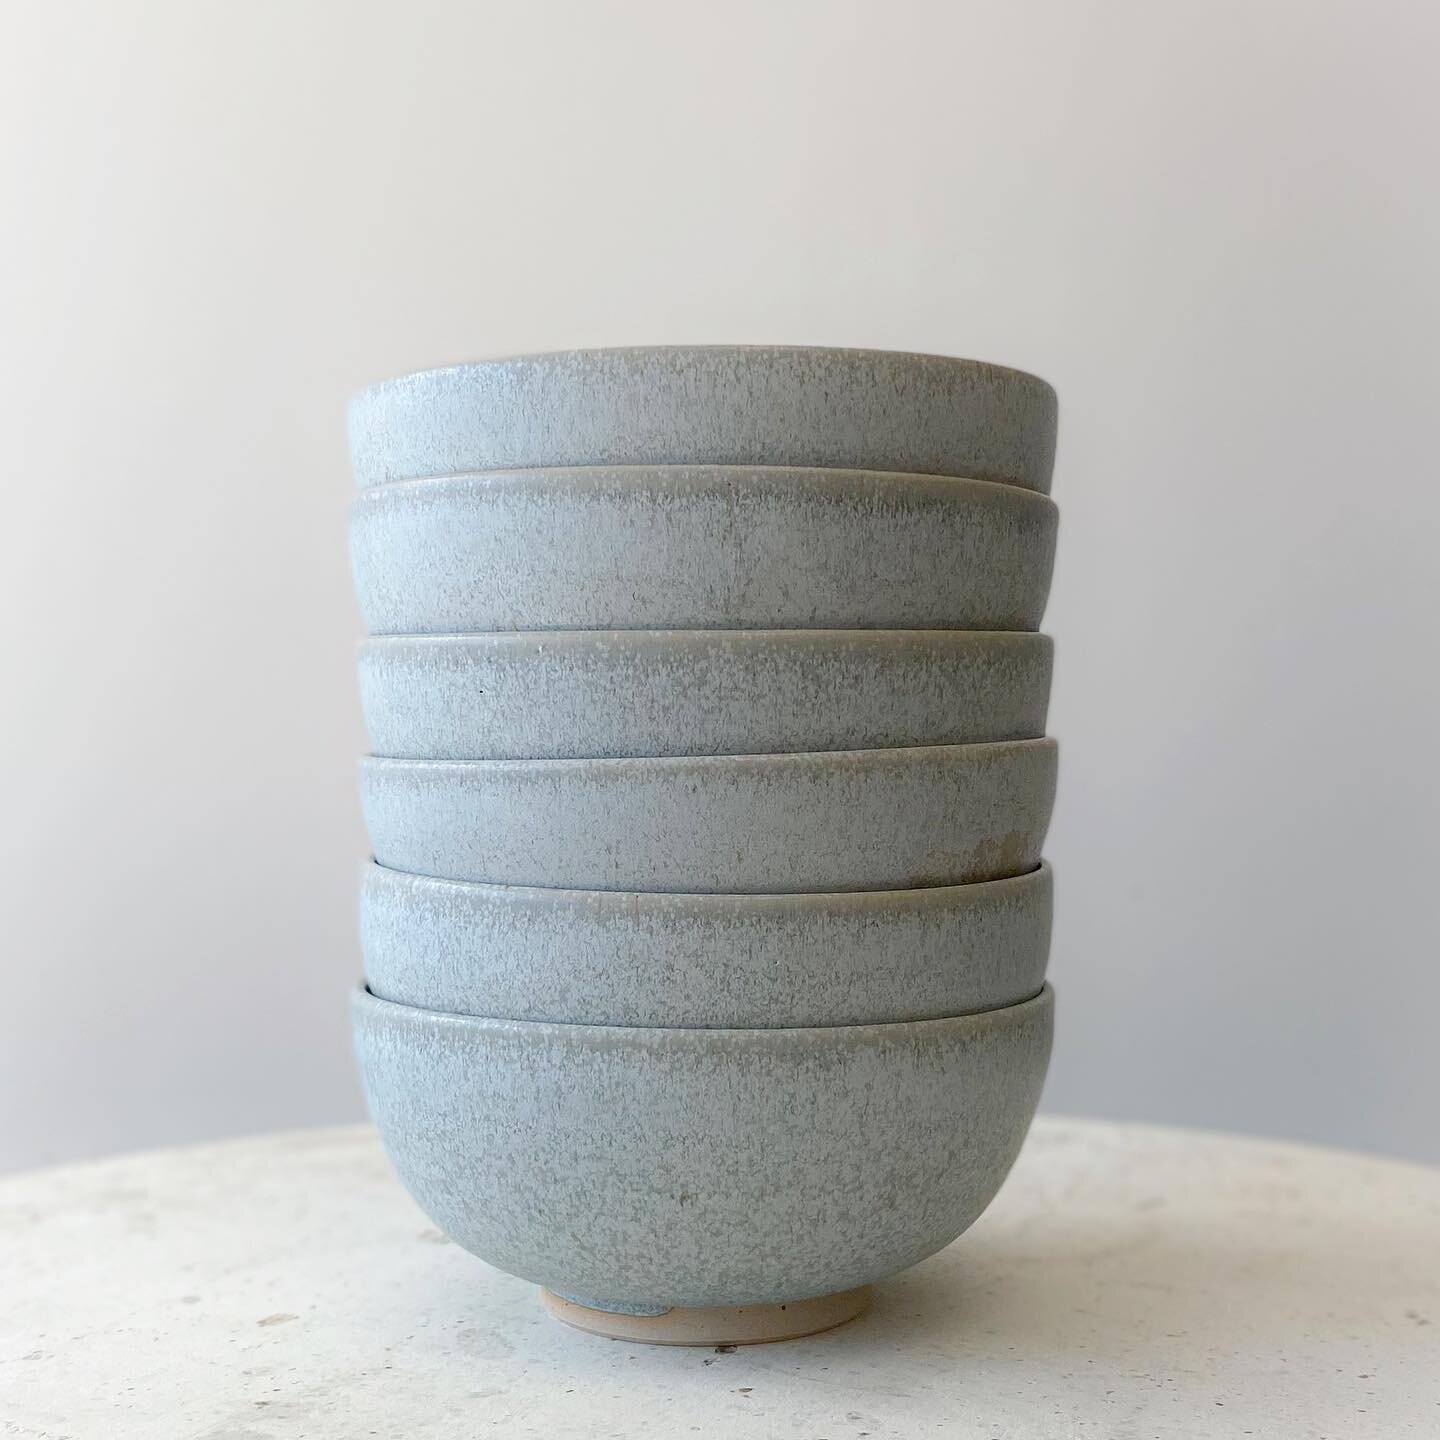 Les bols 💧
.
.
.
#vaisselle #artdelatable #bol #stoneware #blueglaze #ceramiste #lyon